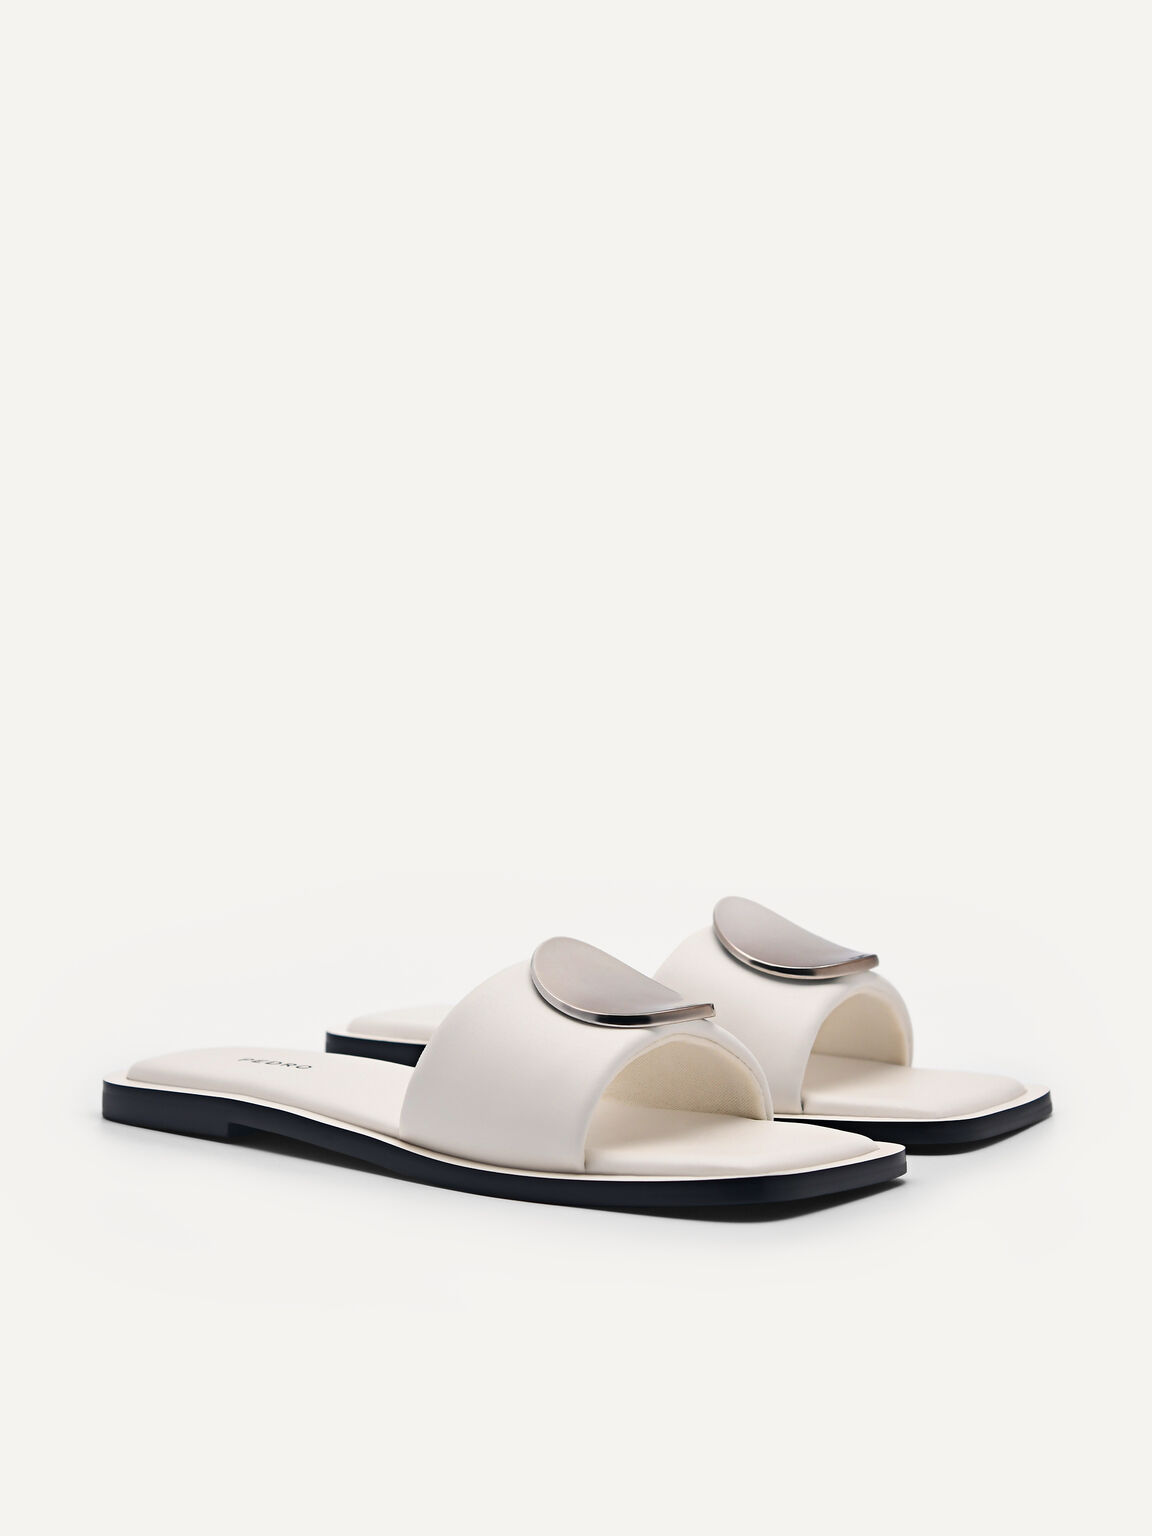 Vibe Square Toe Sandals, White, hi-res